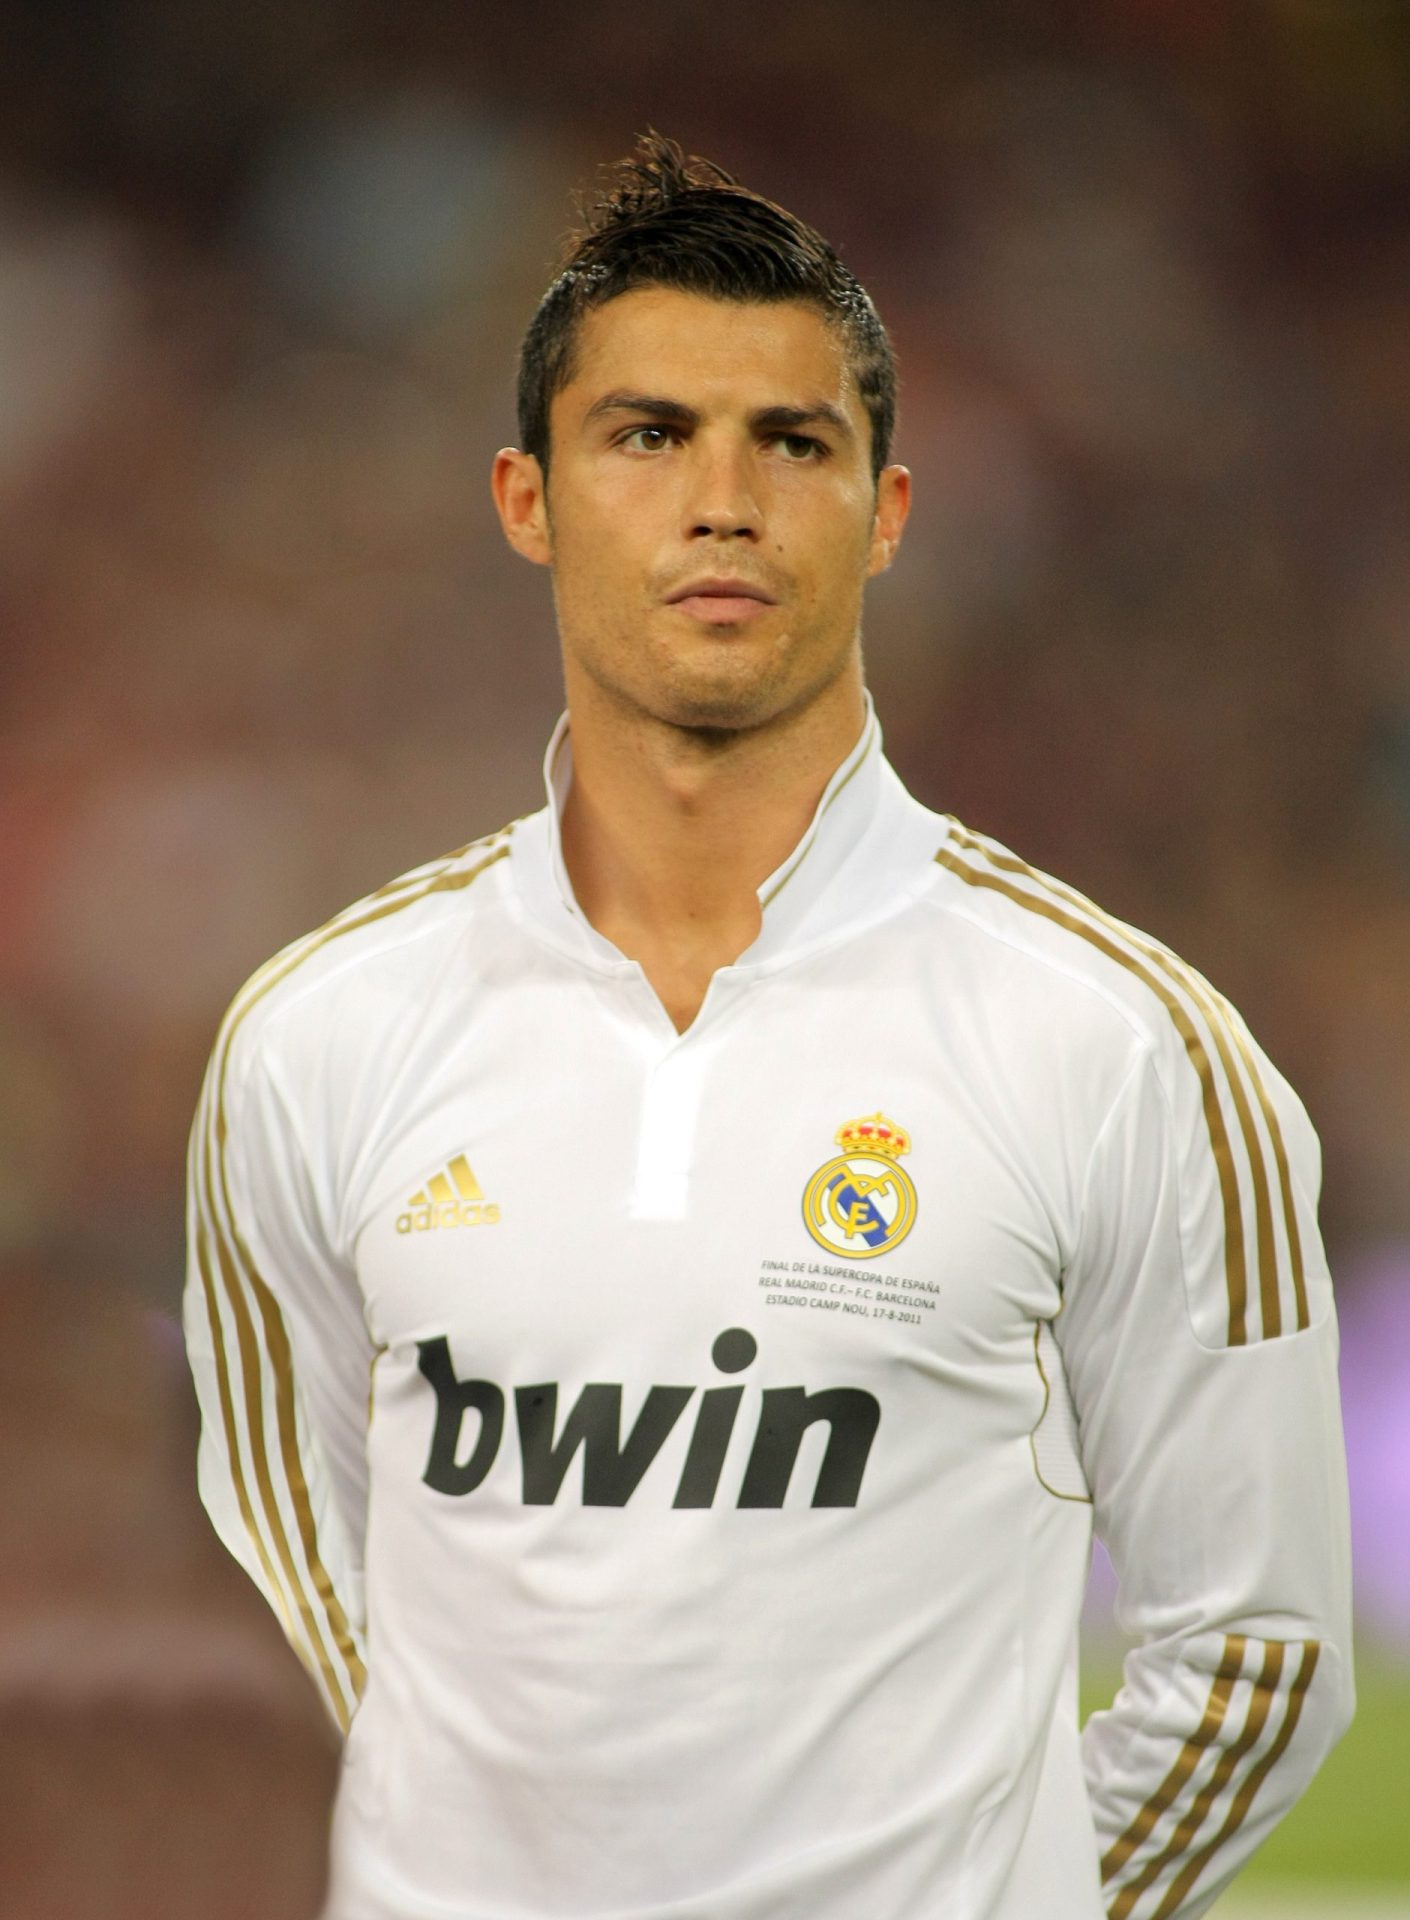 Ronaldo “está igual a qualquer um dos outros”, diz Fernando Santos